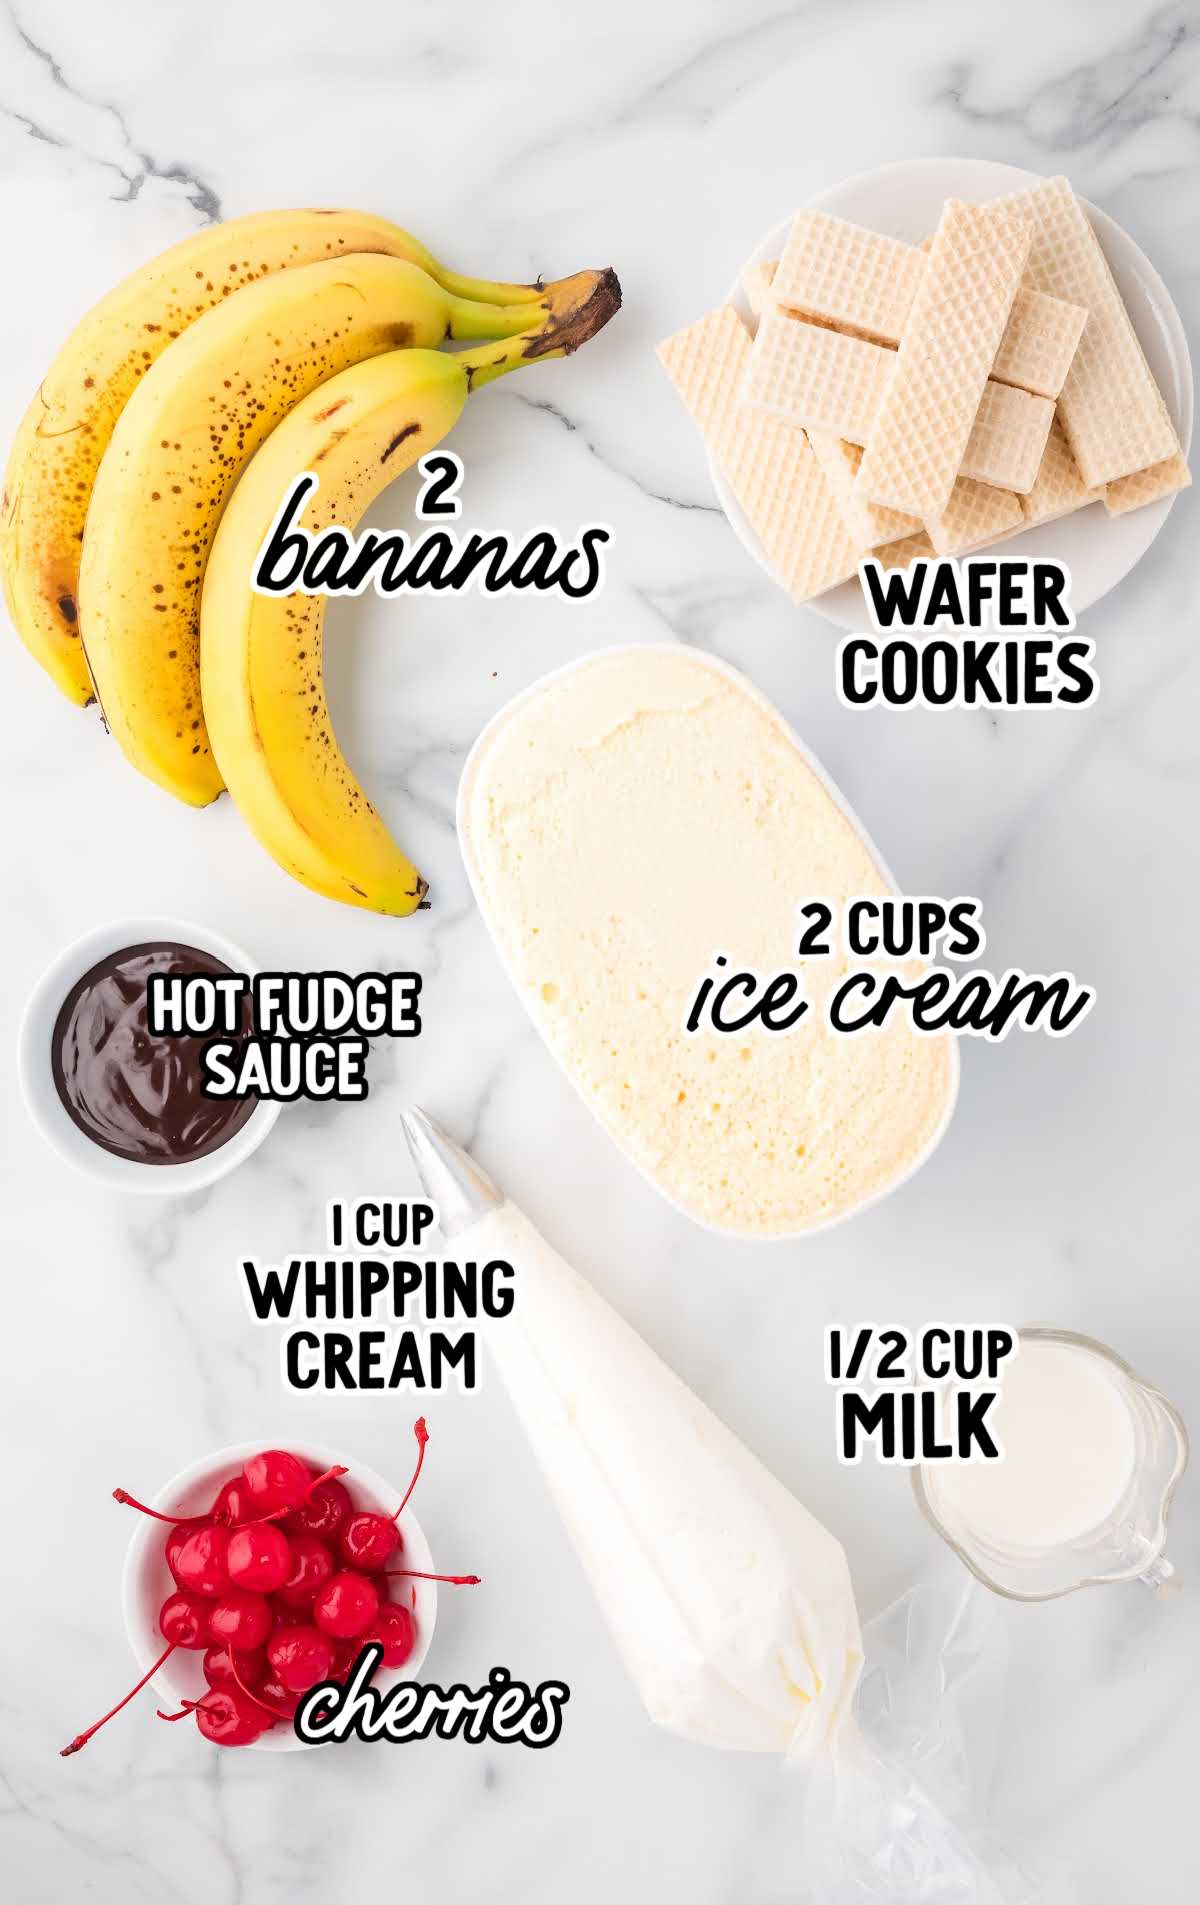 Banana Milkshake raw ingredients that are labeled